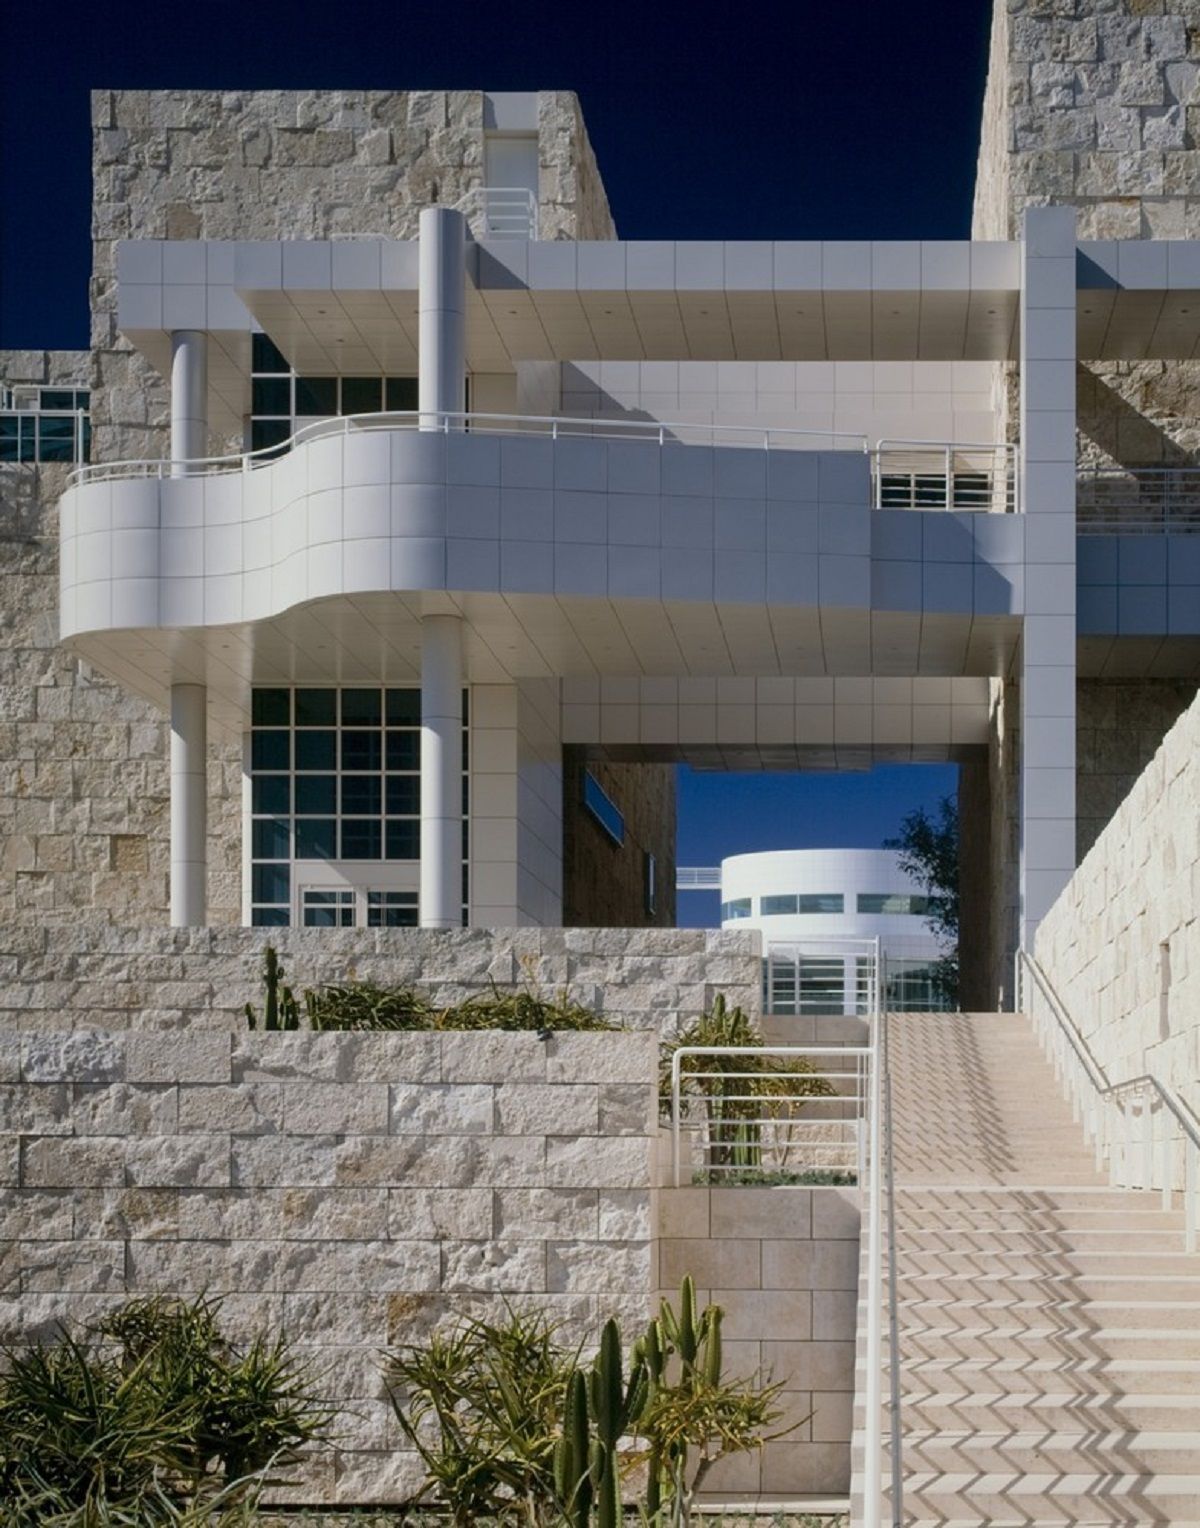 kienviet kien truc kinh dien trung tam getty Richard Meier Partners 6 1